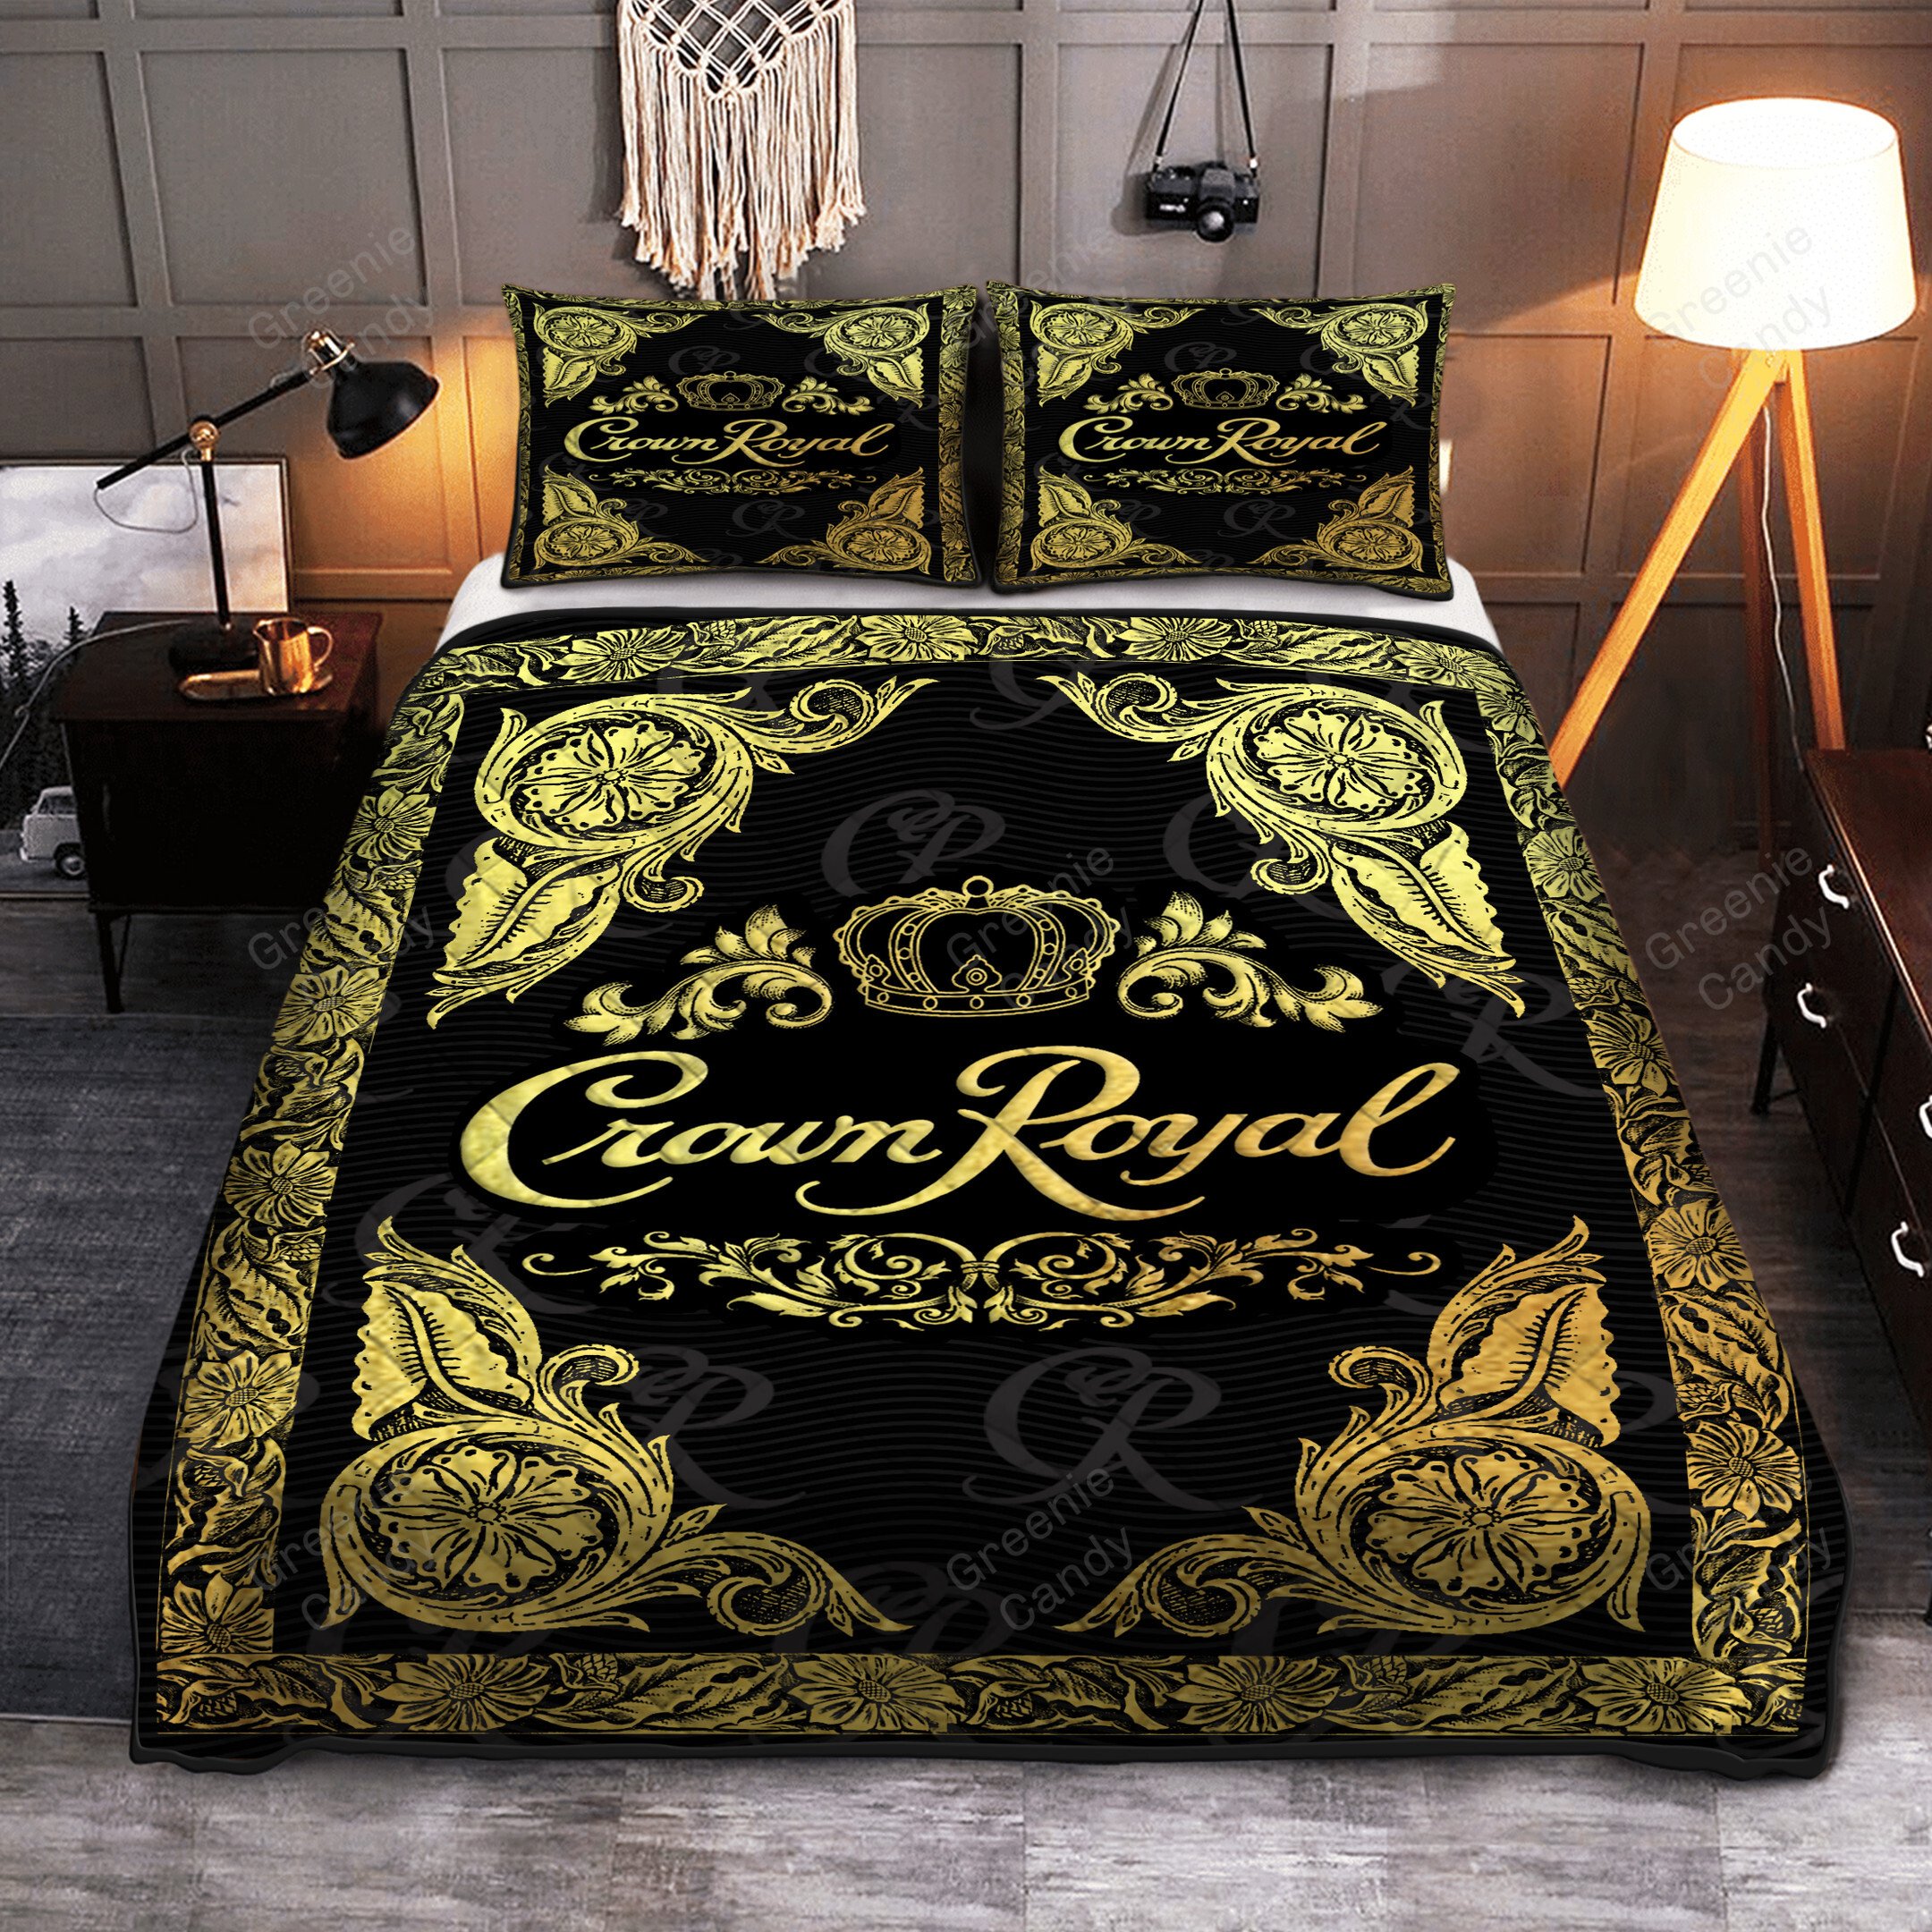 Crown Royal black Whisky quilt bedding set